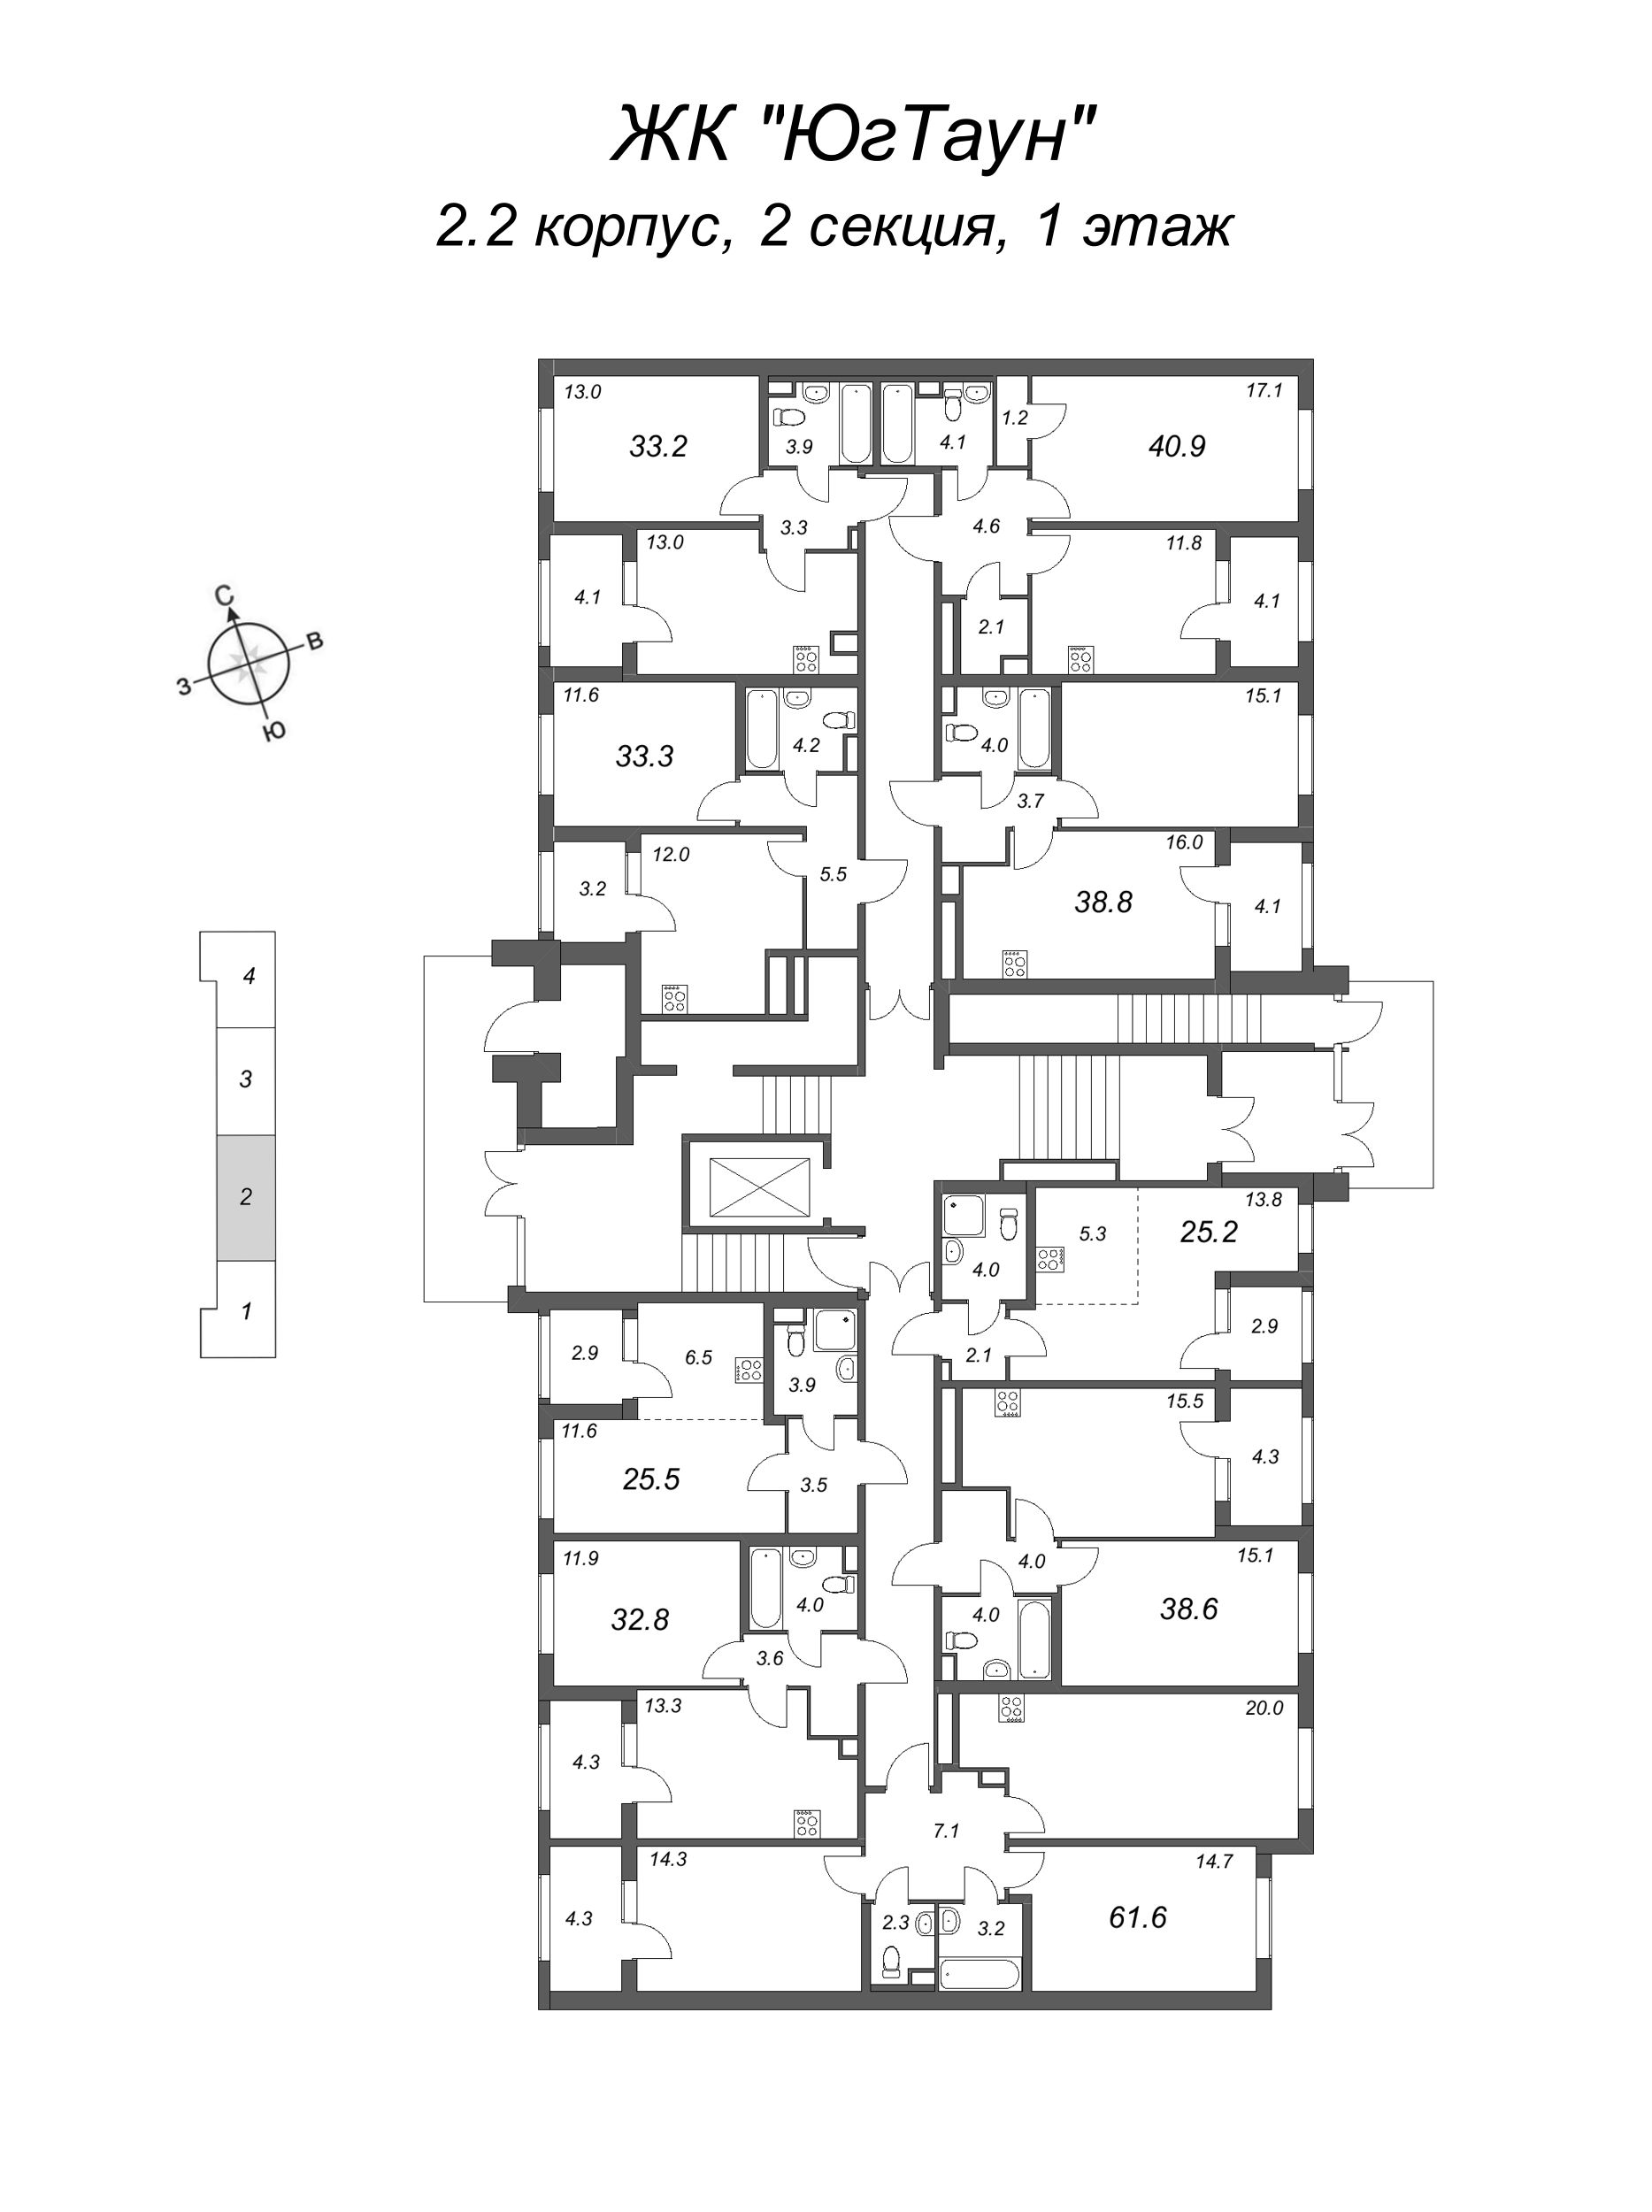 2-комнатная (Евро) квартира, 38.8 м² в ЖК "ЮгТаун" - планировка этажа